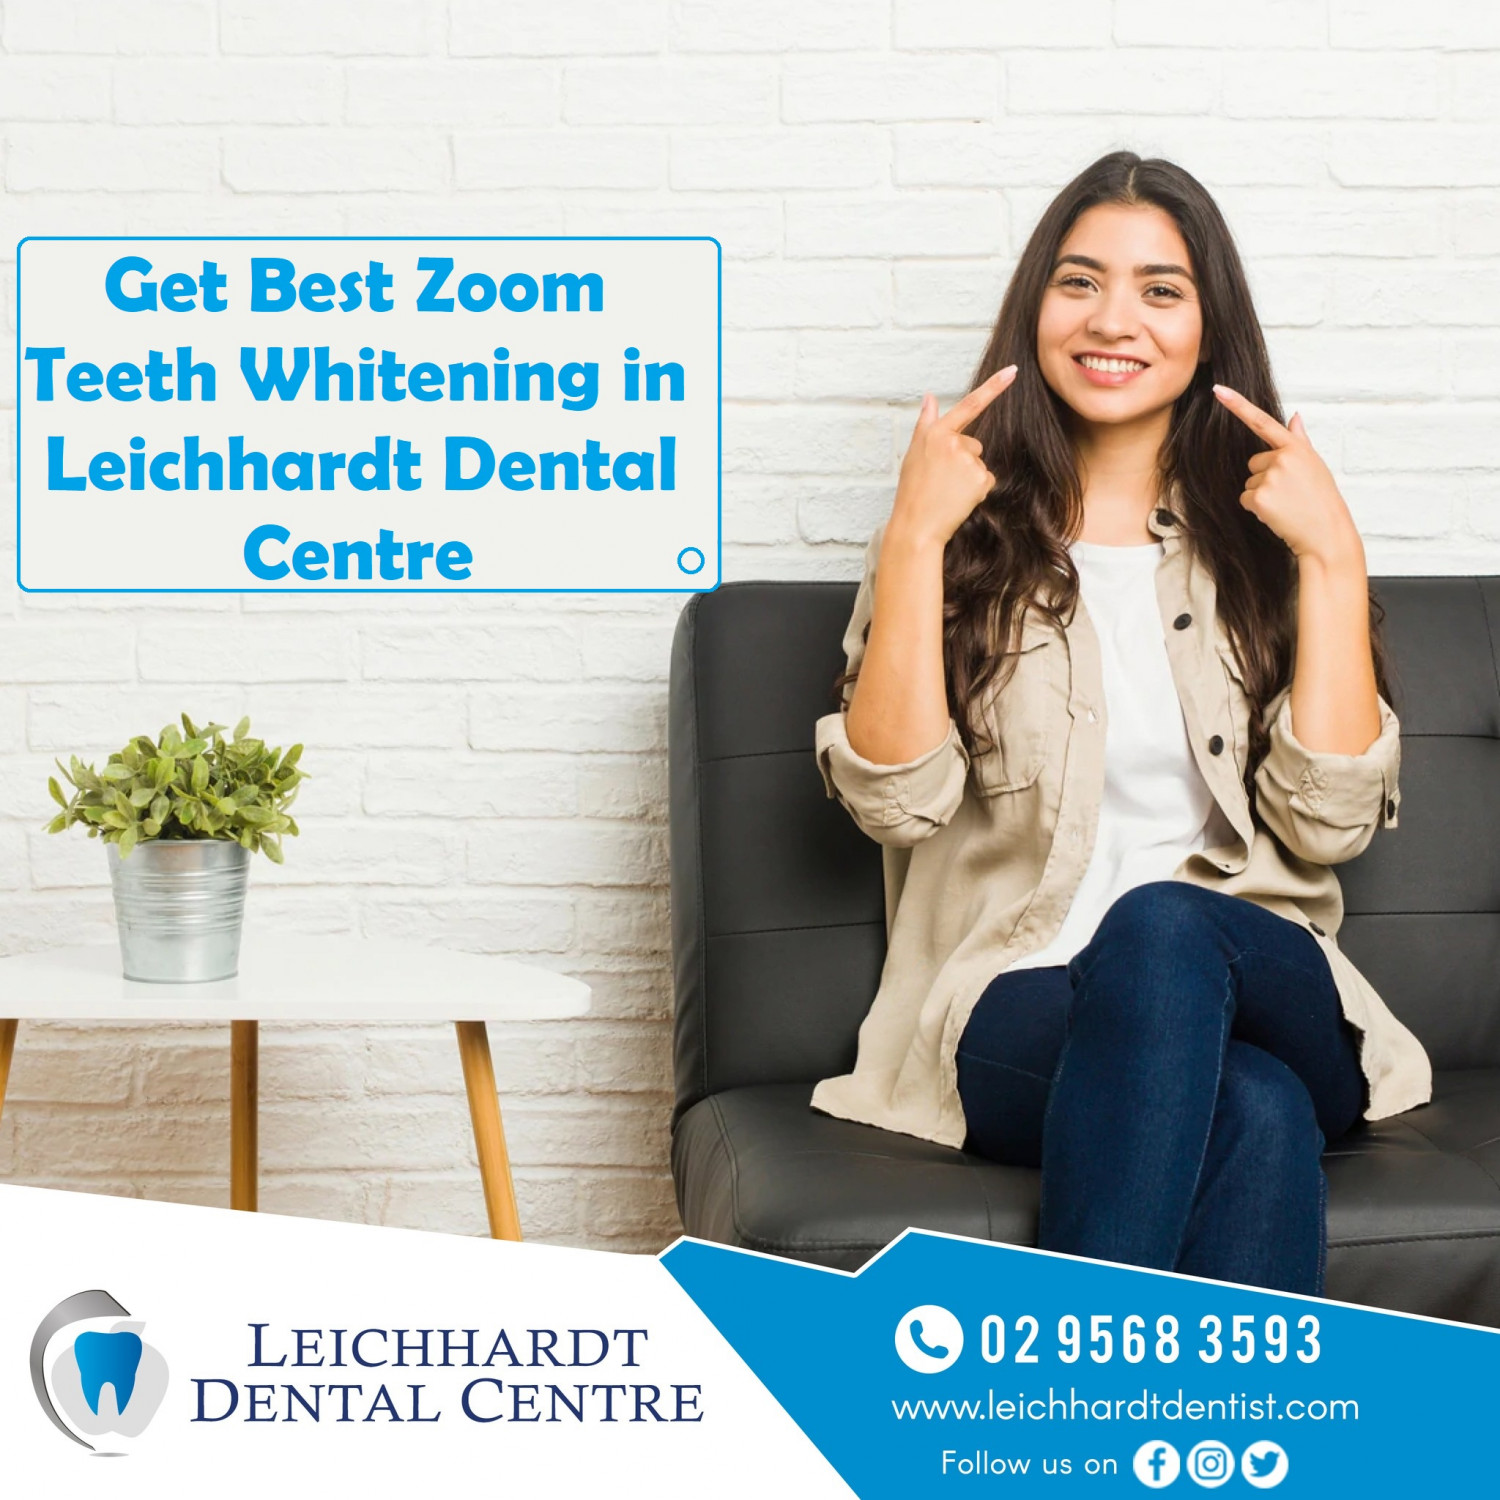 Get Best Zoom Teeth Whitening in Leichhardt Dental Centre Infographic